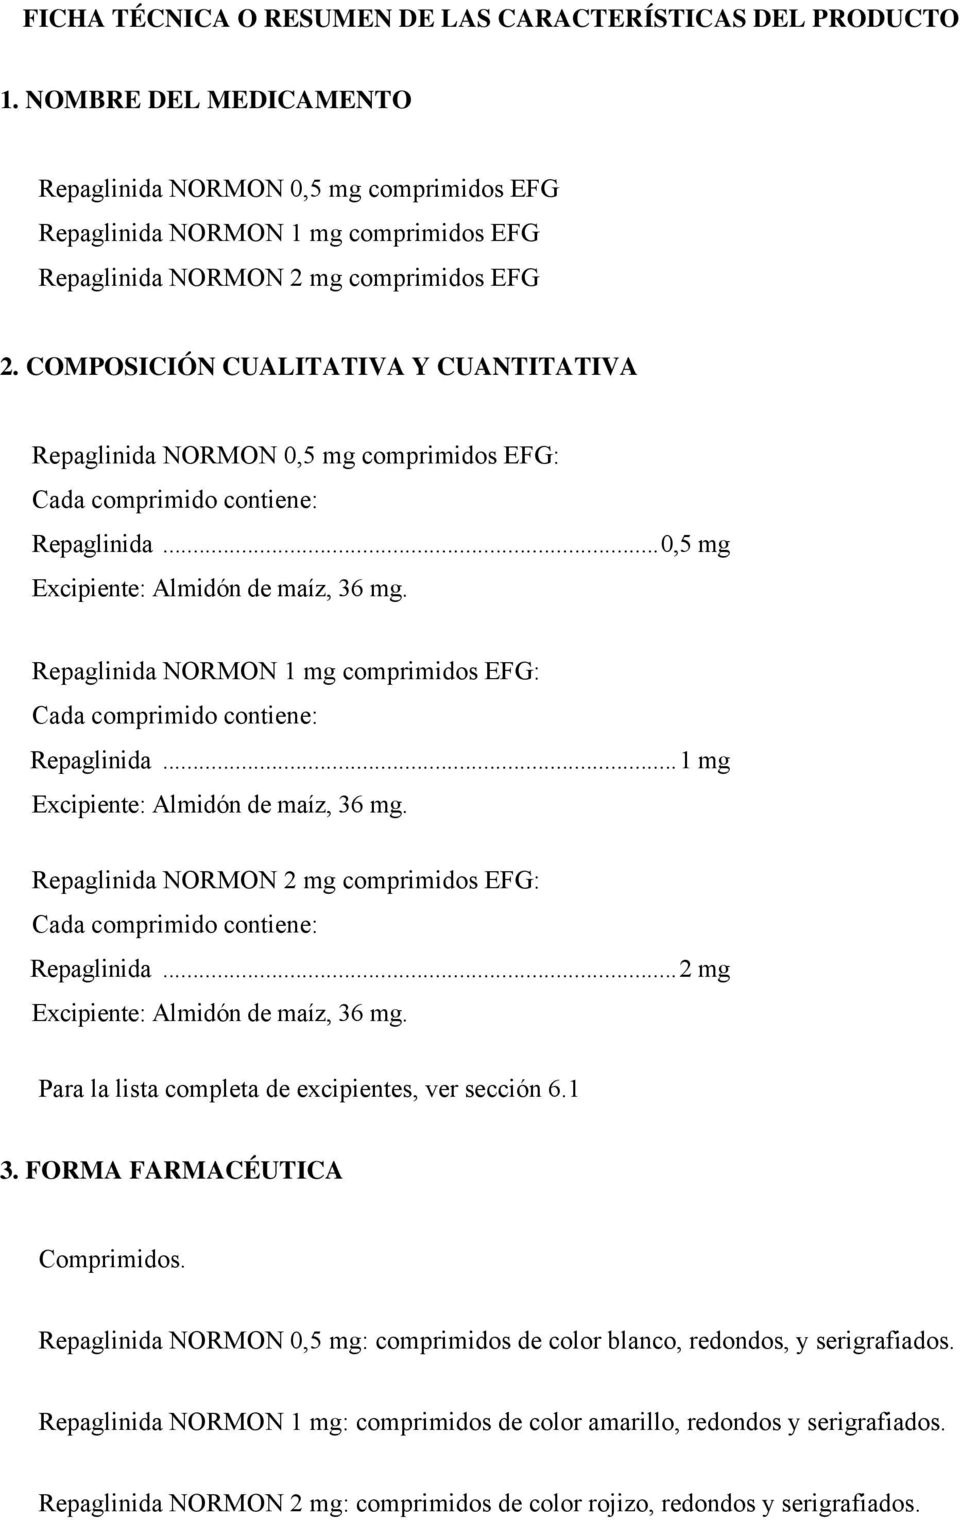 COMPOSICIÓN CUALITATIVA Y CUANTITATIVA Repaglinida NORMON 0,5 mg comprimidos EFG: Cada comprimido contiene: Repaglinida...0,5 mg Excipiente: Almidón de maíz, 36 mg.